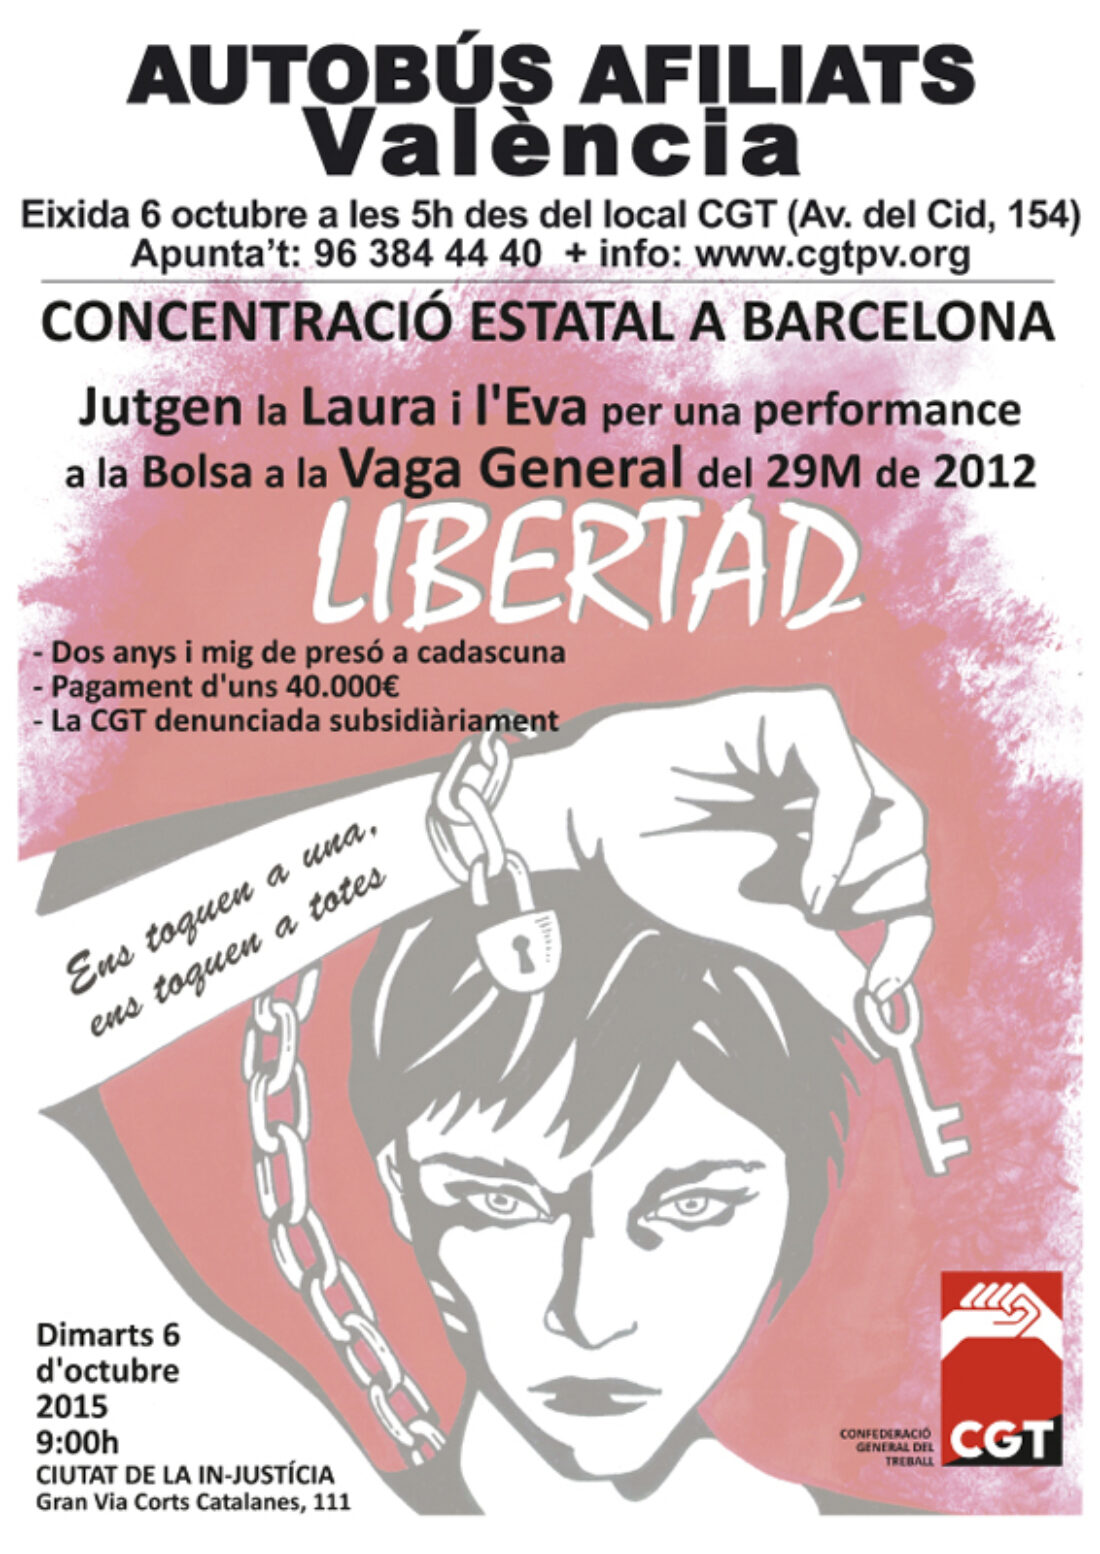 6-o: Autobús afiliados y afiliadas desde València #LauraEvaLlibertat